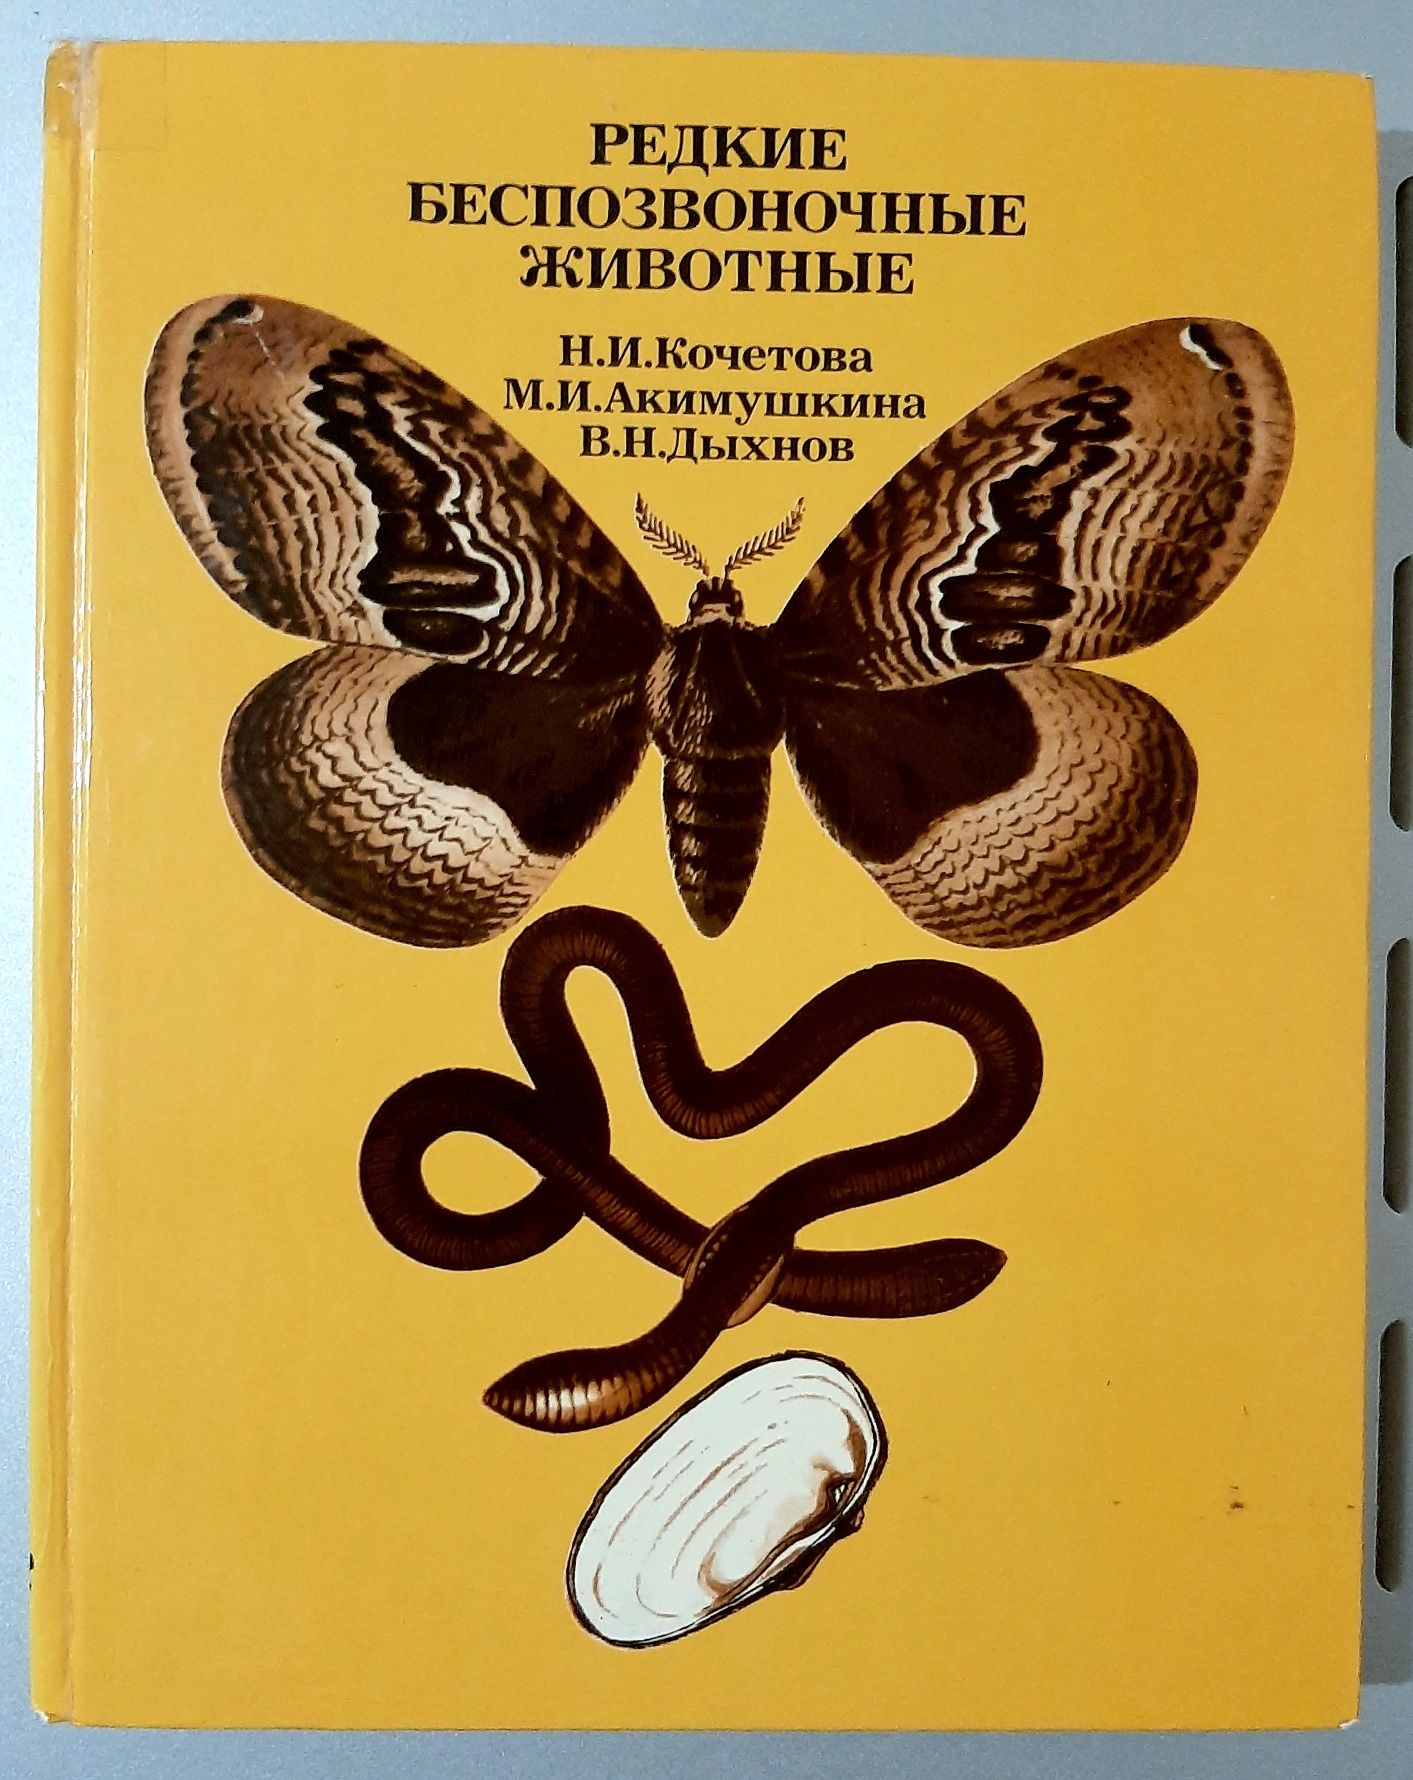 Книги СССР, редкие издания